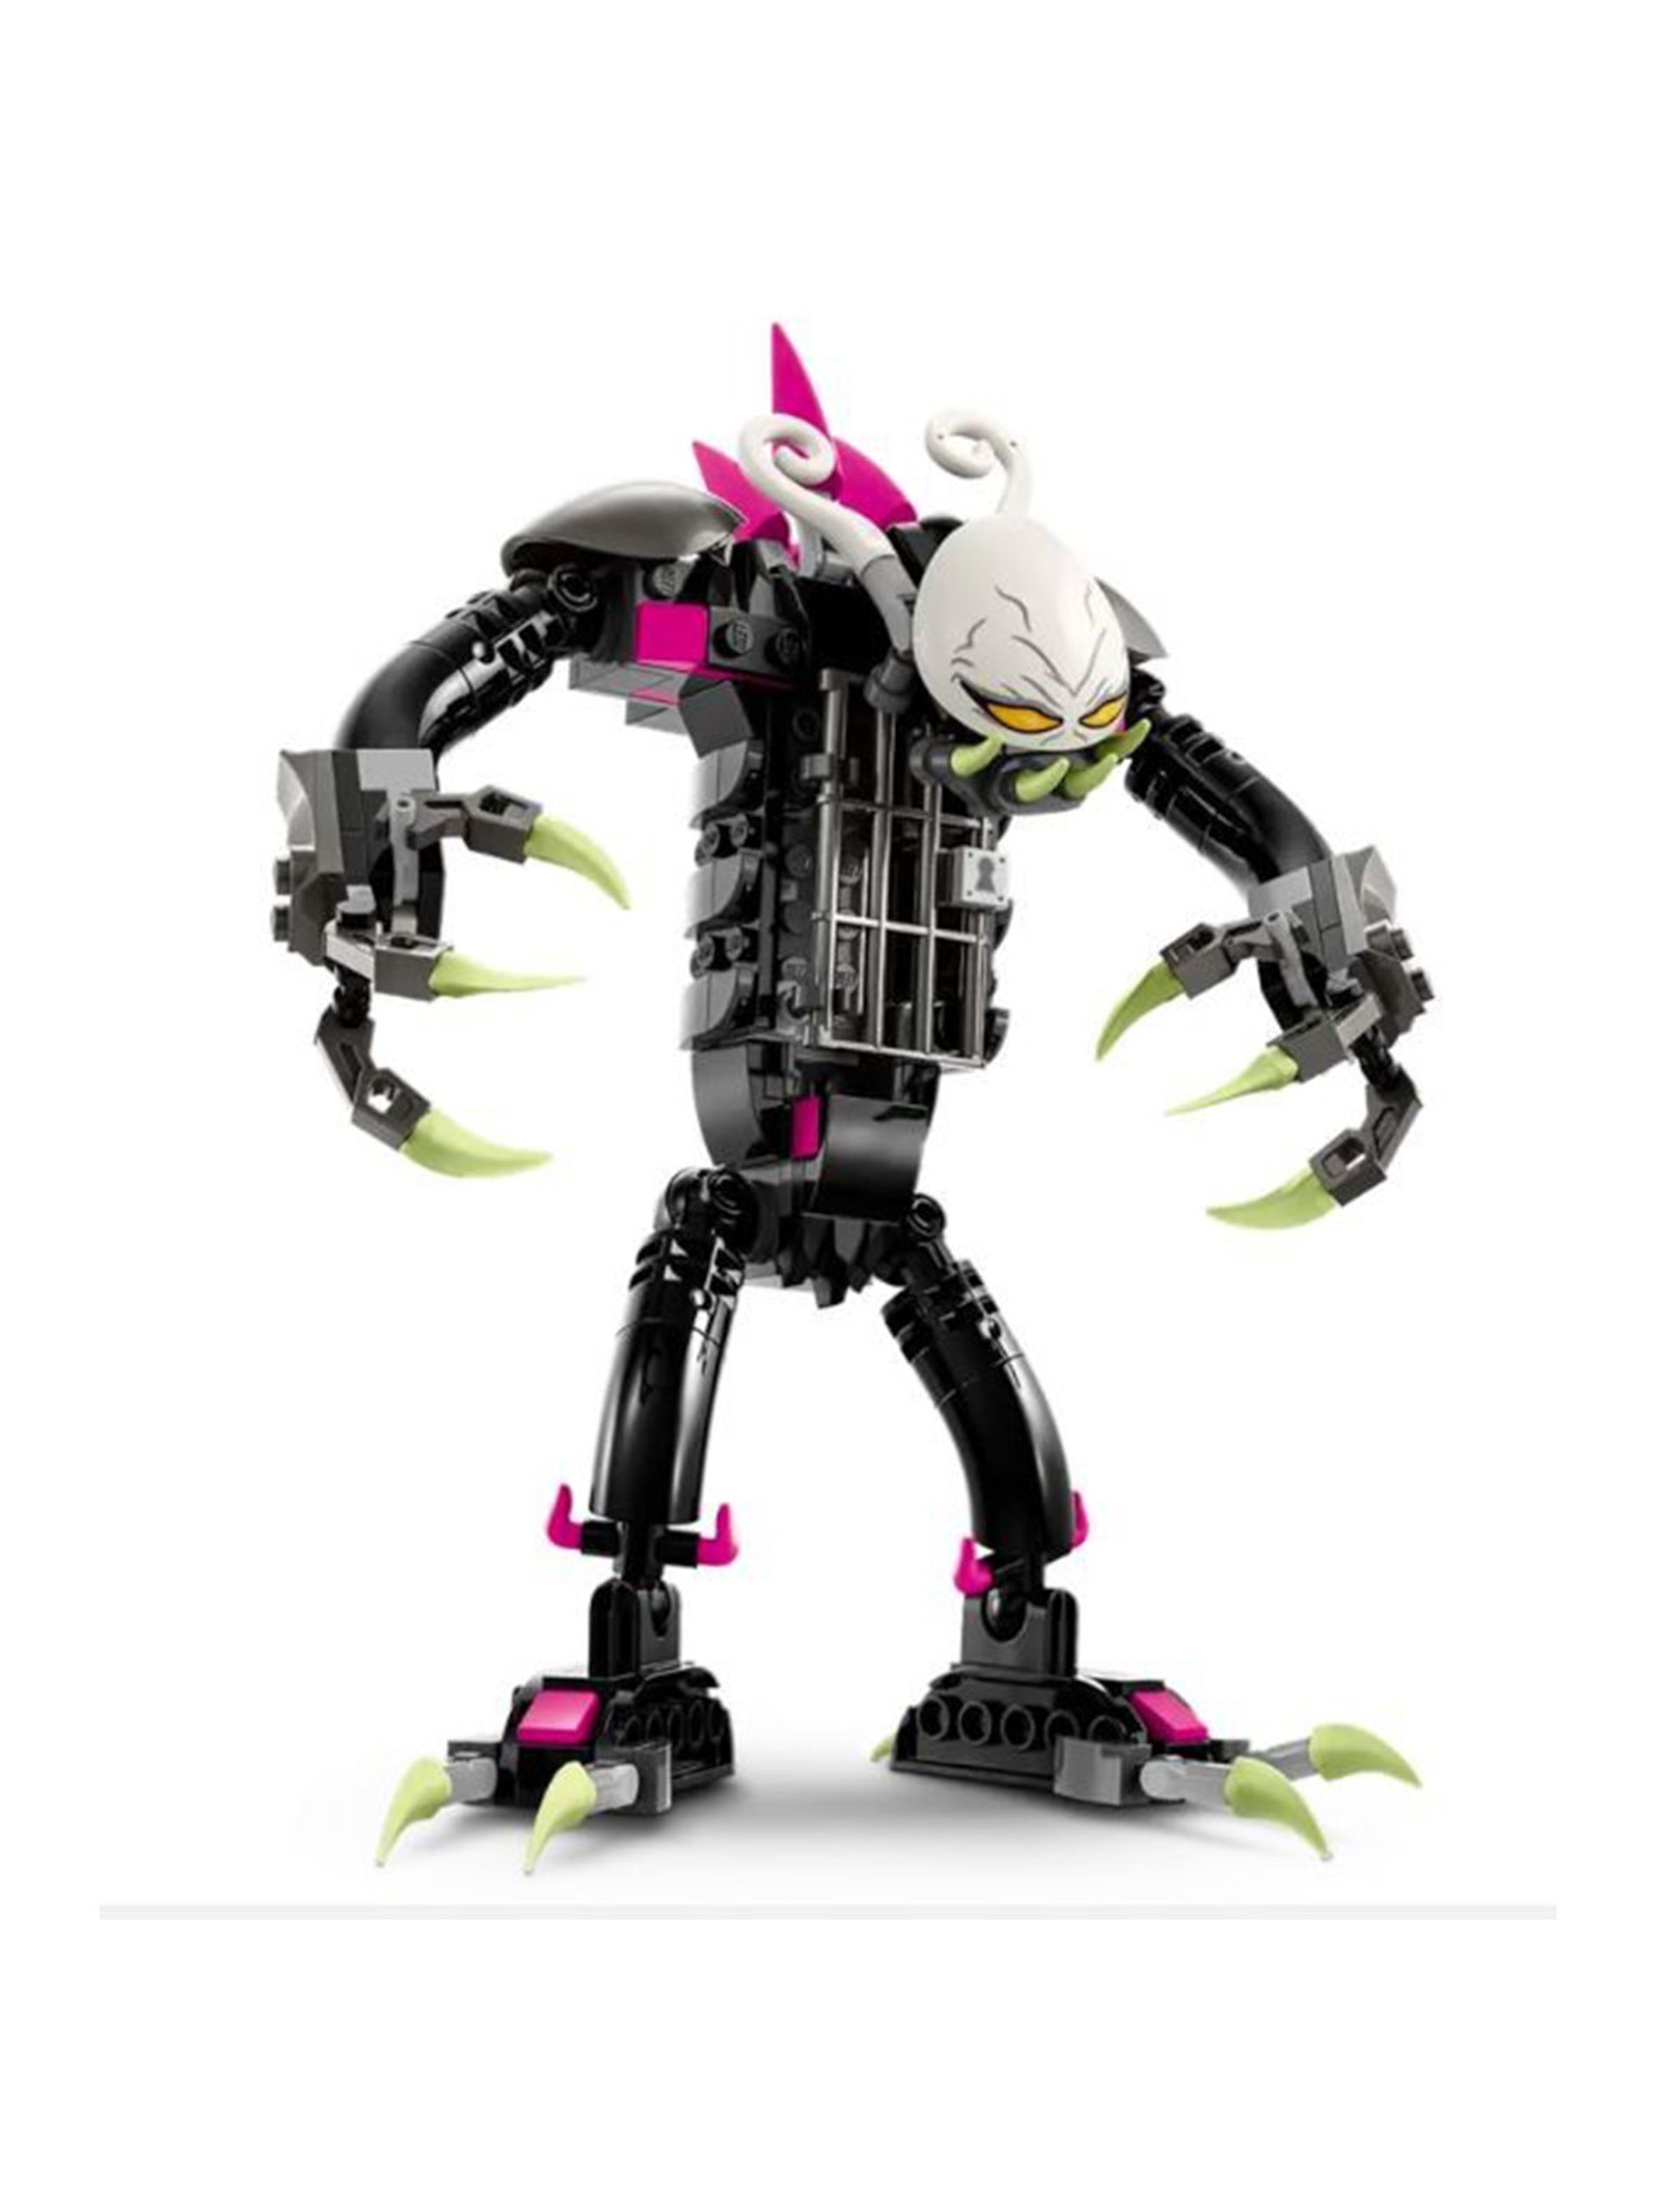 Klocki LEGO DREAMZzz 71455 Klatkoszmarnik - 274 elementy, wiek 7 +